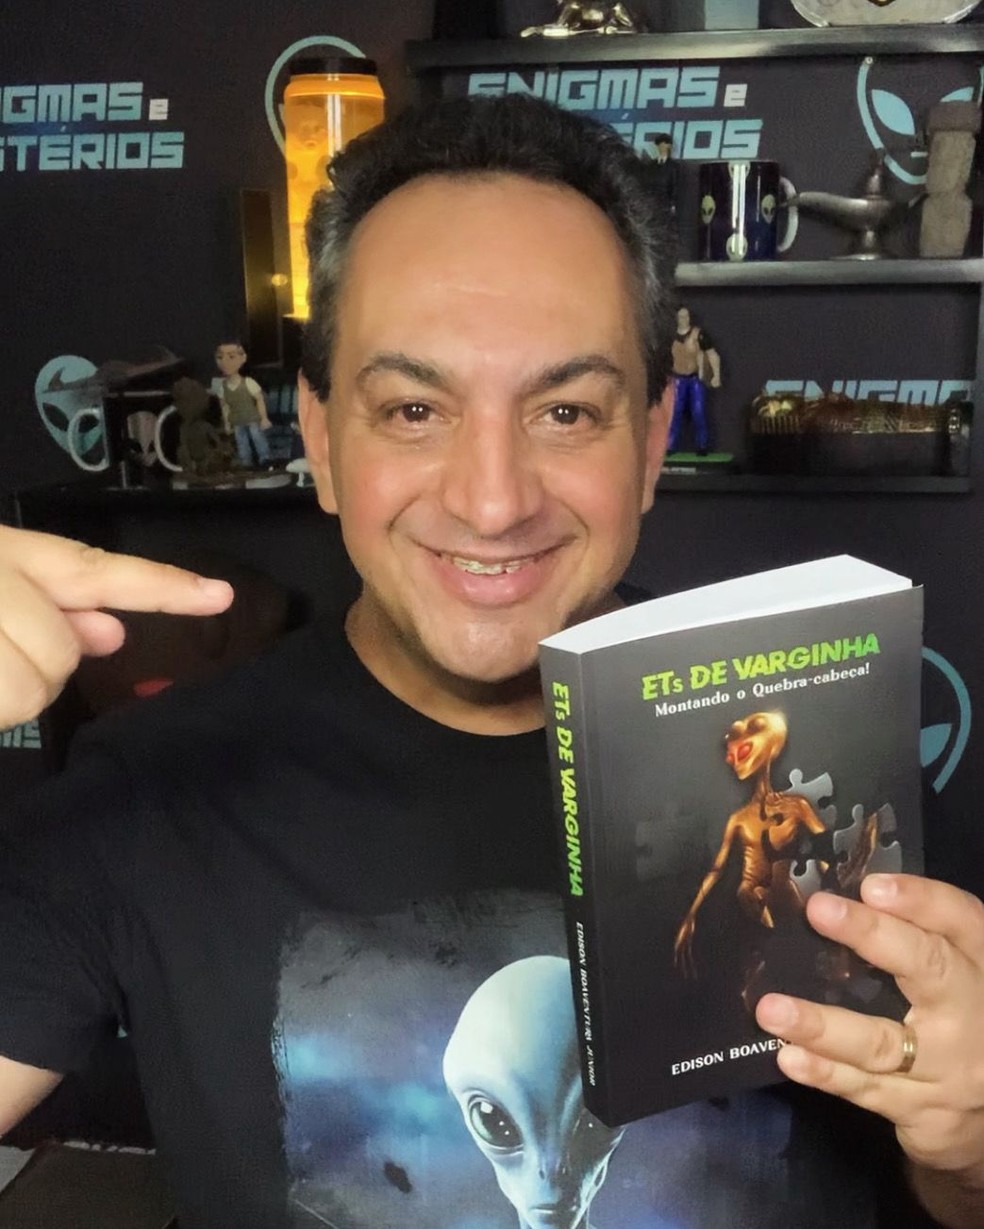 Ufólogo Edison Boaventura Jr. lança novo livro sobre o caso "ET de Varginha" — Foto: Divulgação